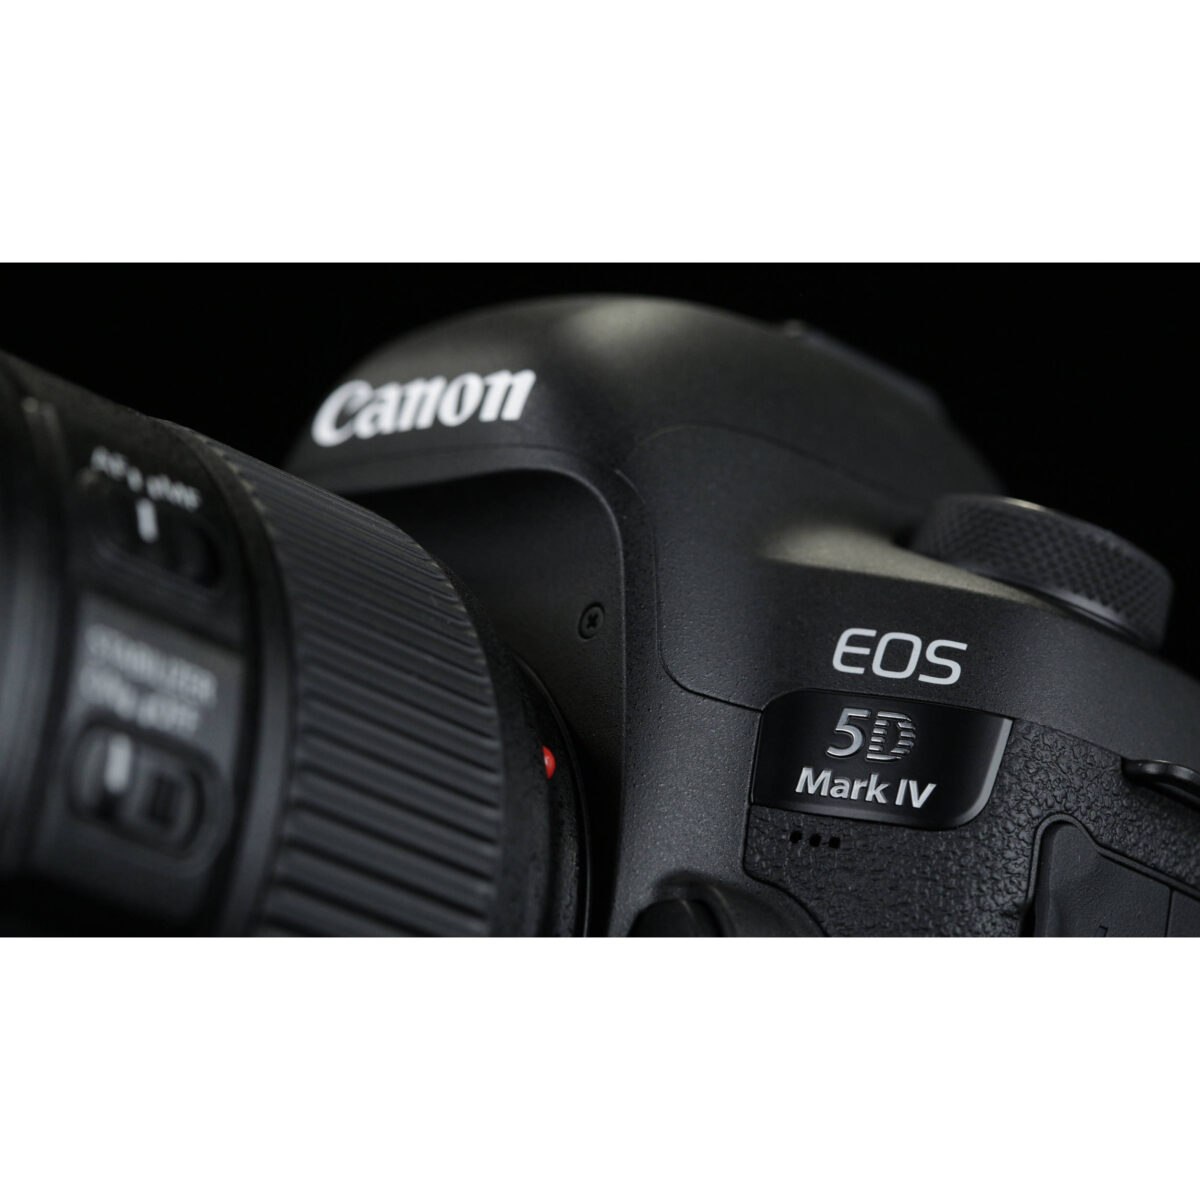 ارزان ترین قیمت دوربین canon eos 5d mark IV تایپ 2 - یزد کمرا